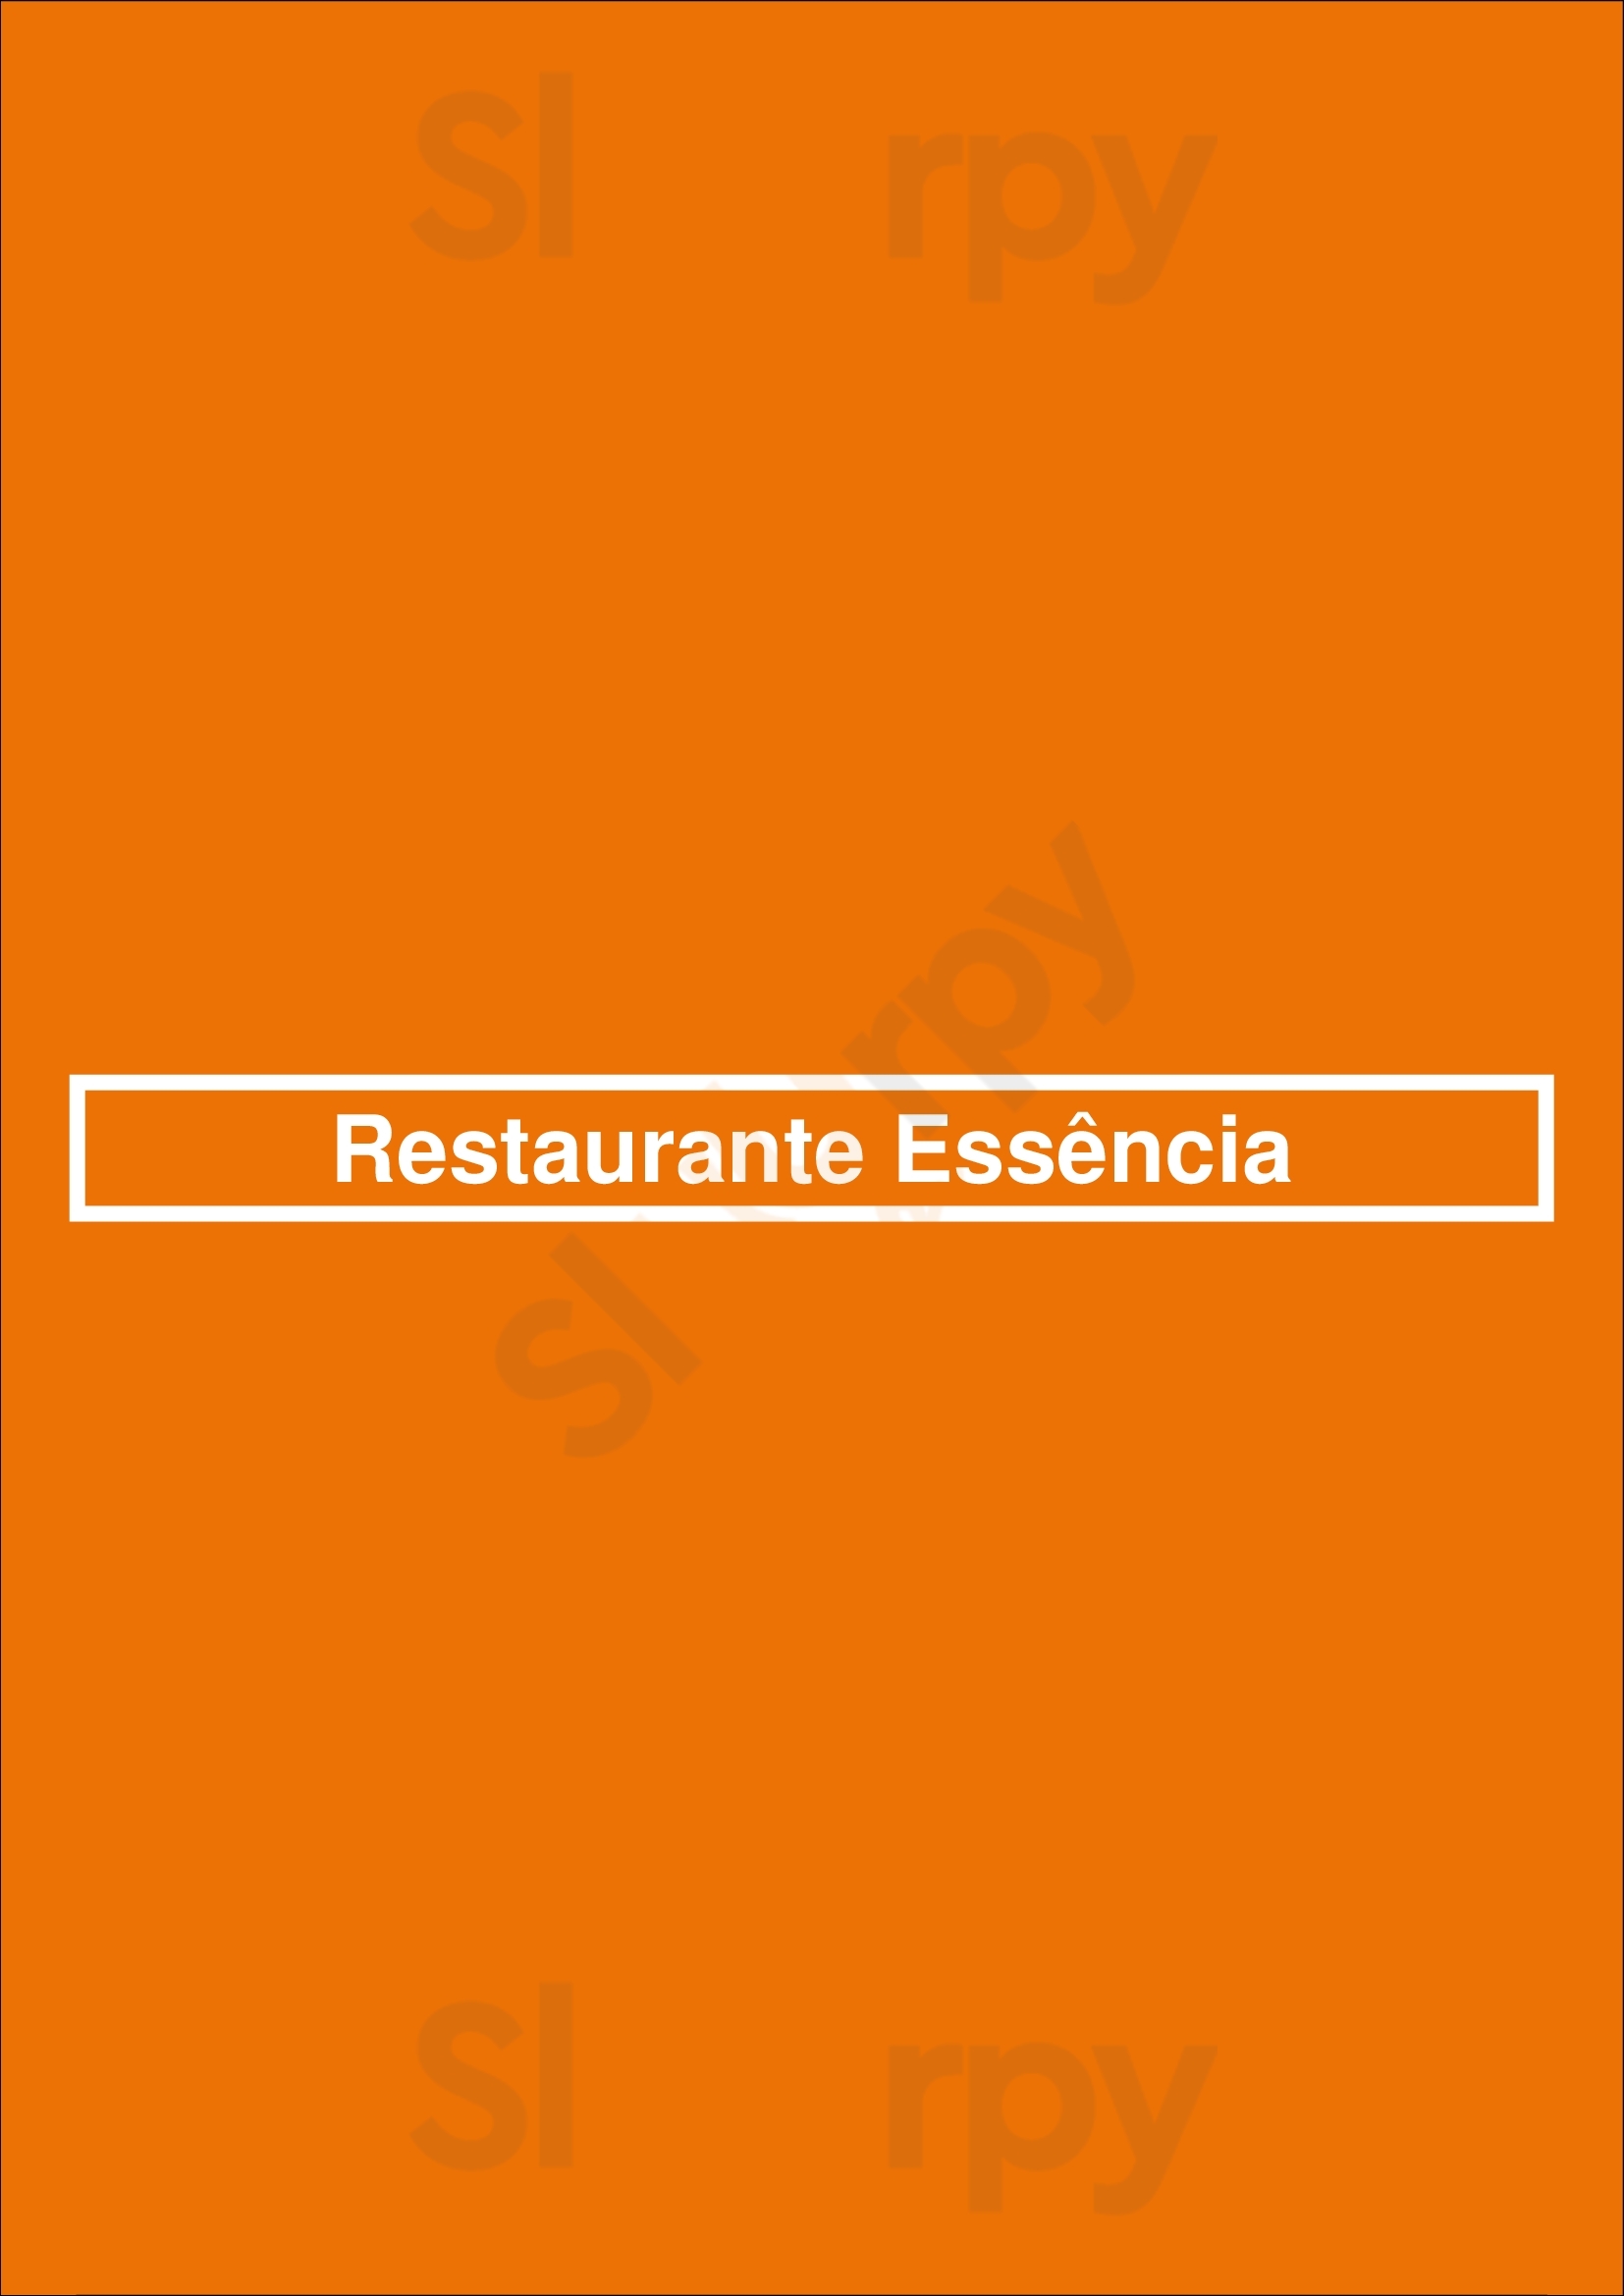 Restaurante Essência Manta Rota Menu - 1